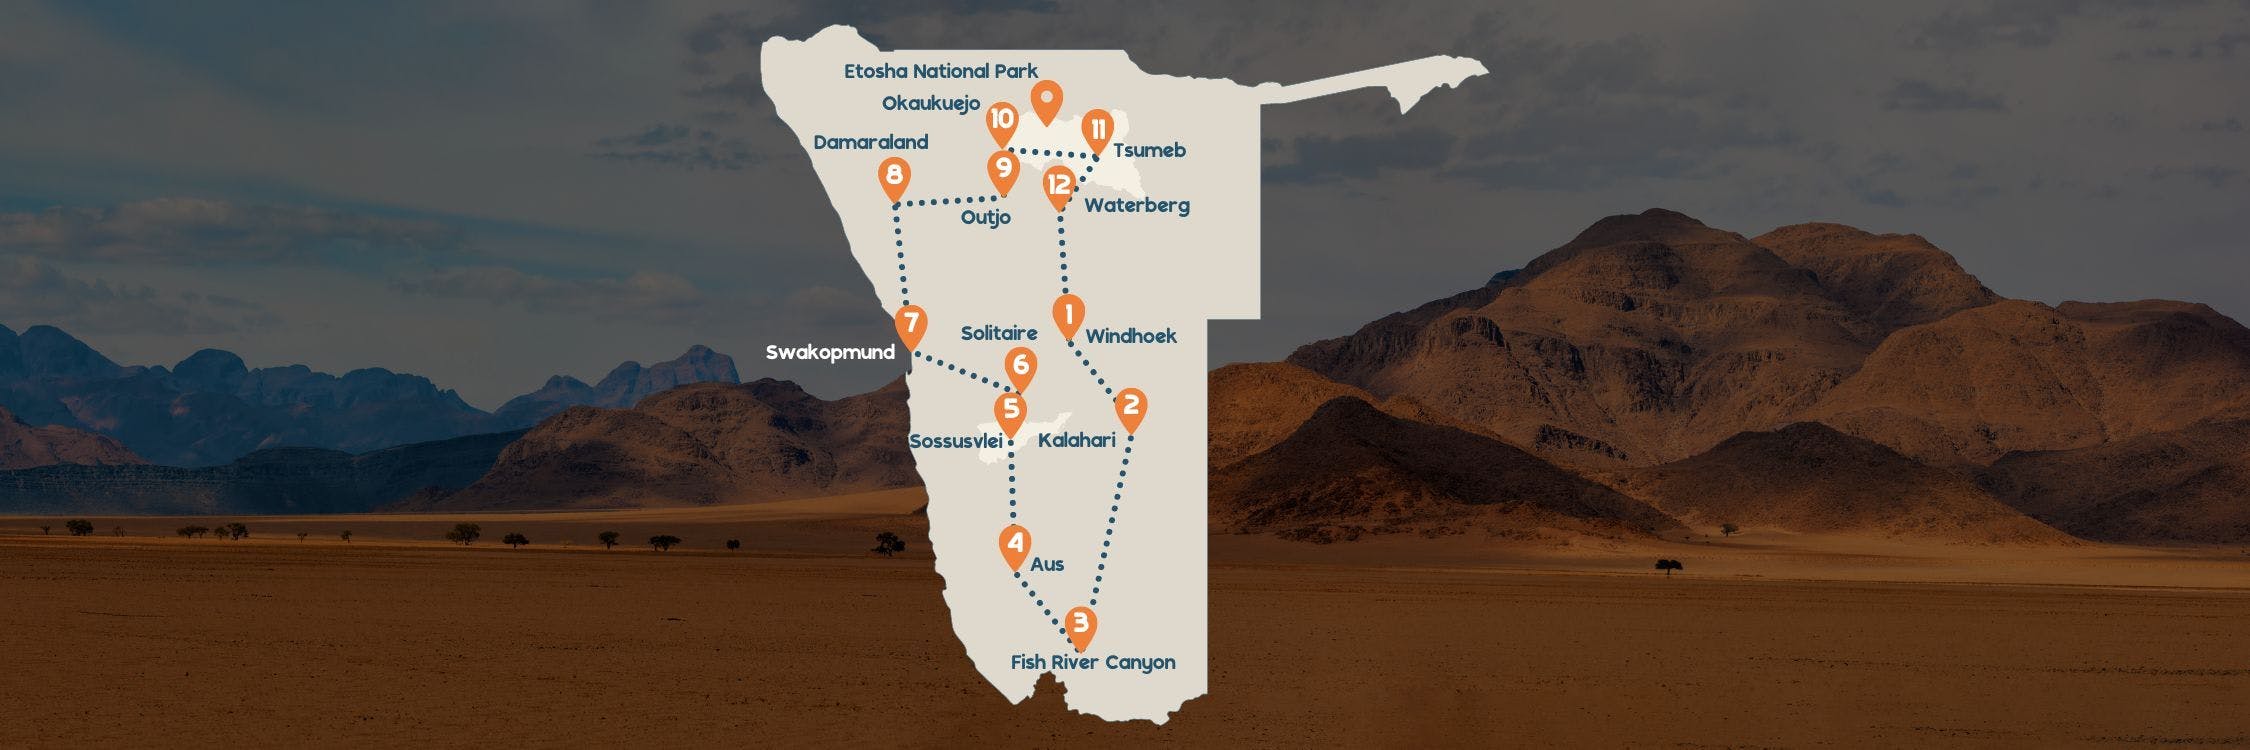 Ultieme Namibie Botswana roadtrip routekaart